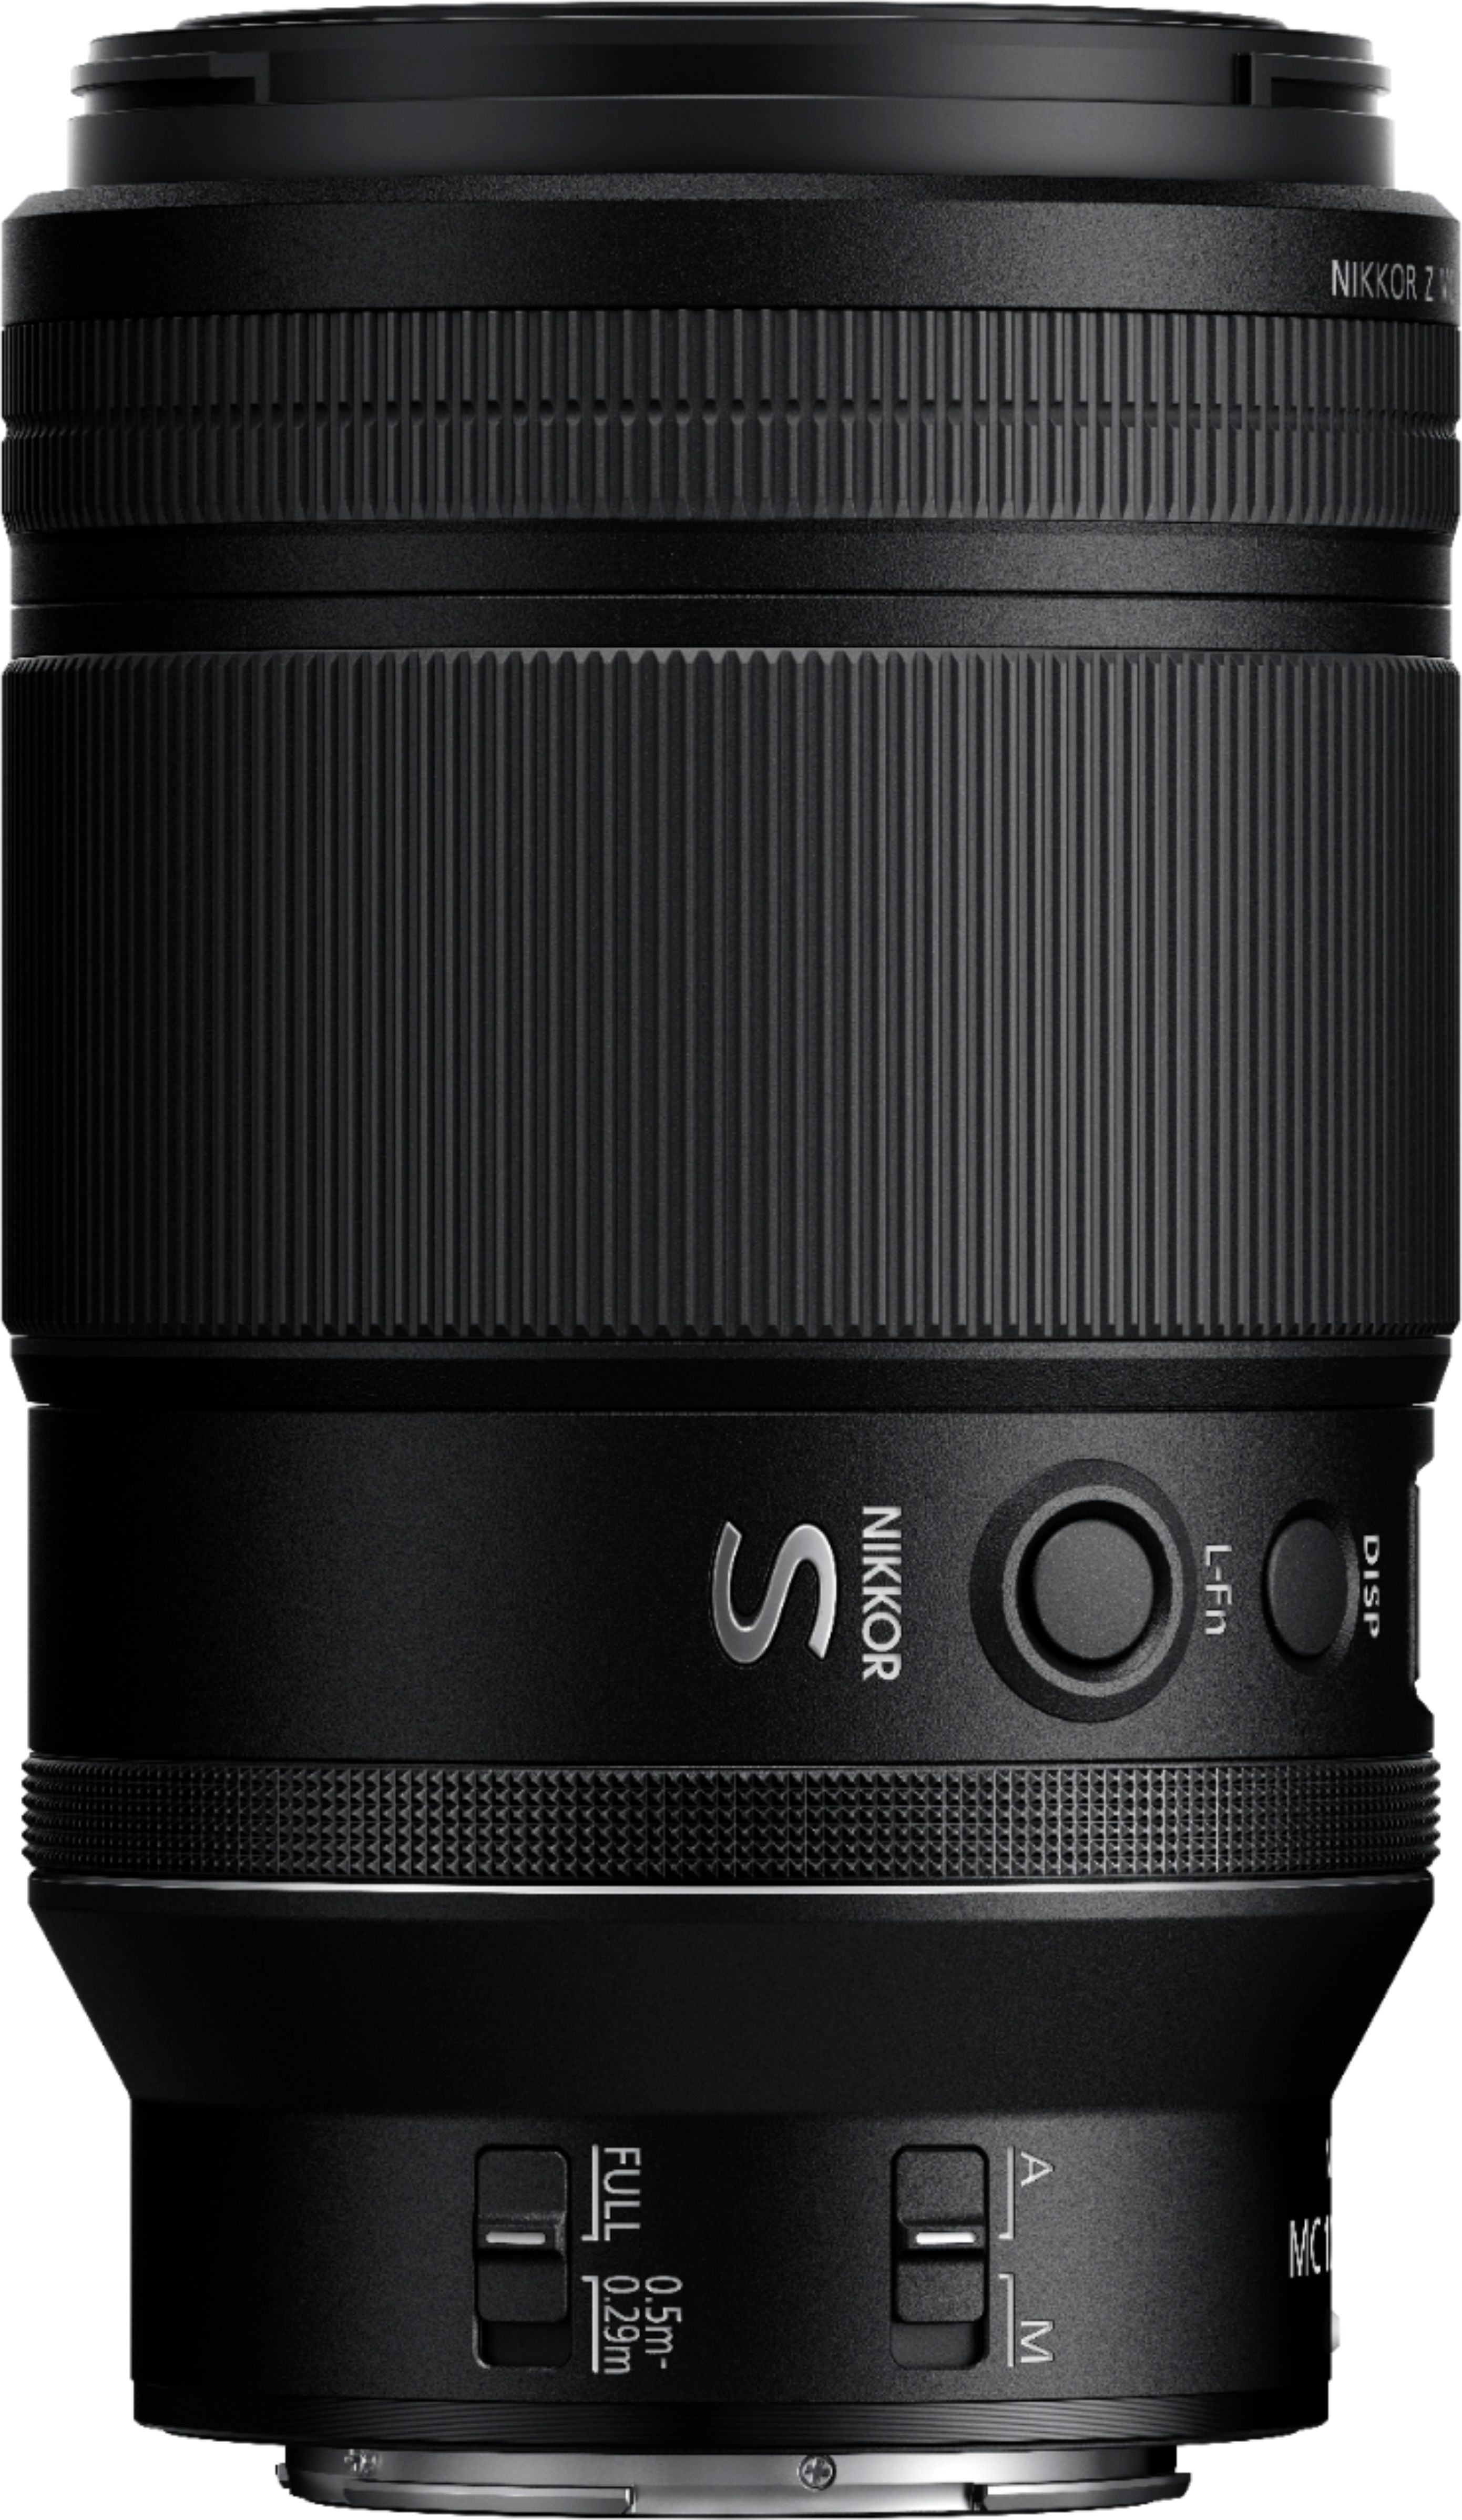 Angle View: Nikon - NIKKOR Z MC 105mm f/2.8 VR S Macro Lens for Z Series Mirrorless Cameras - Black